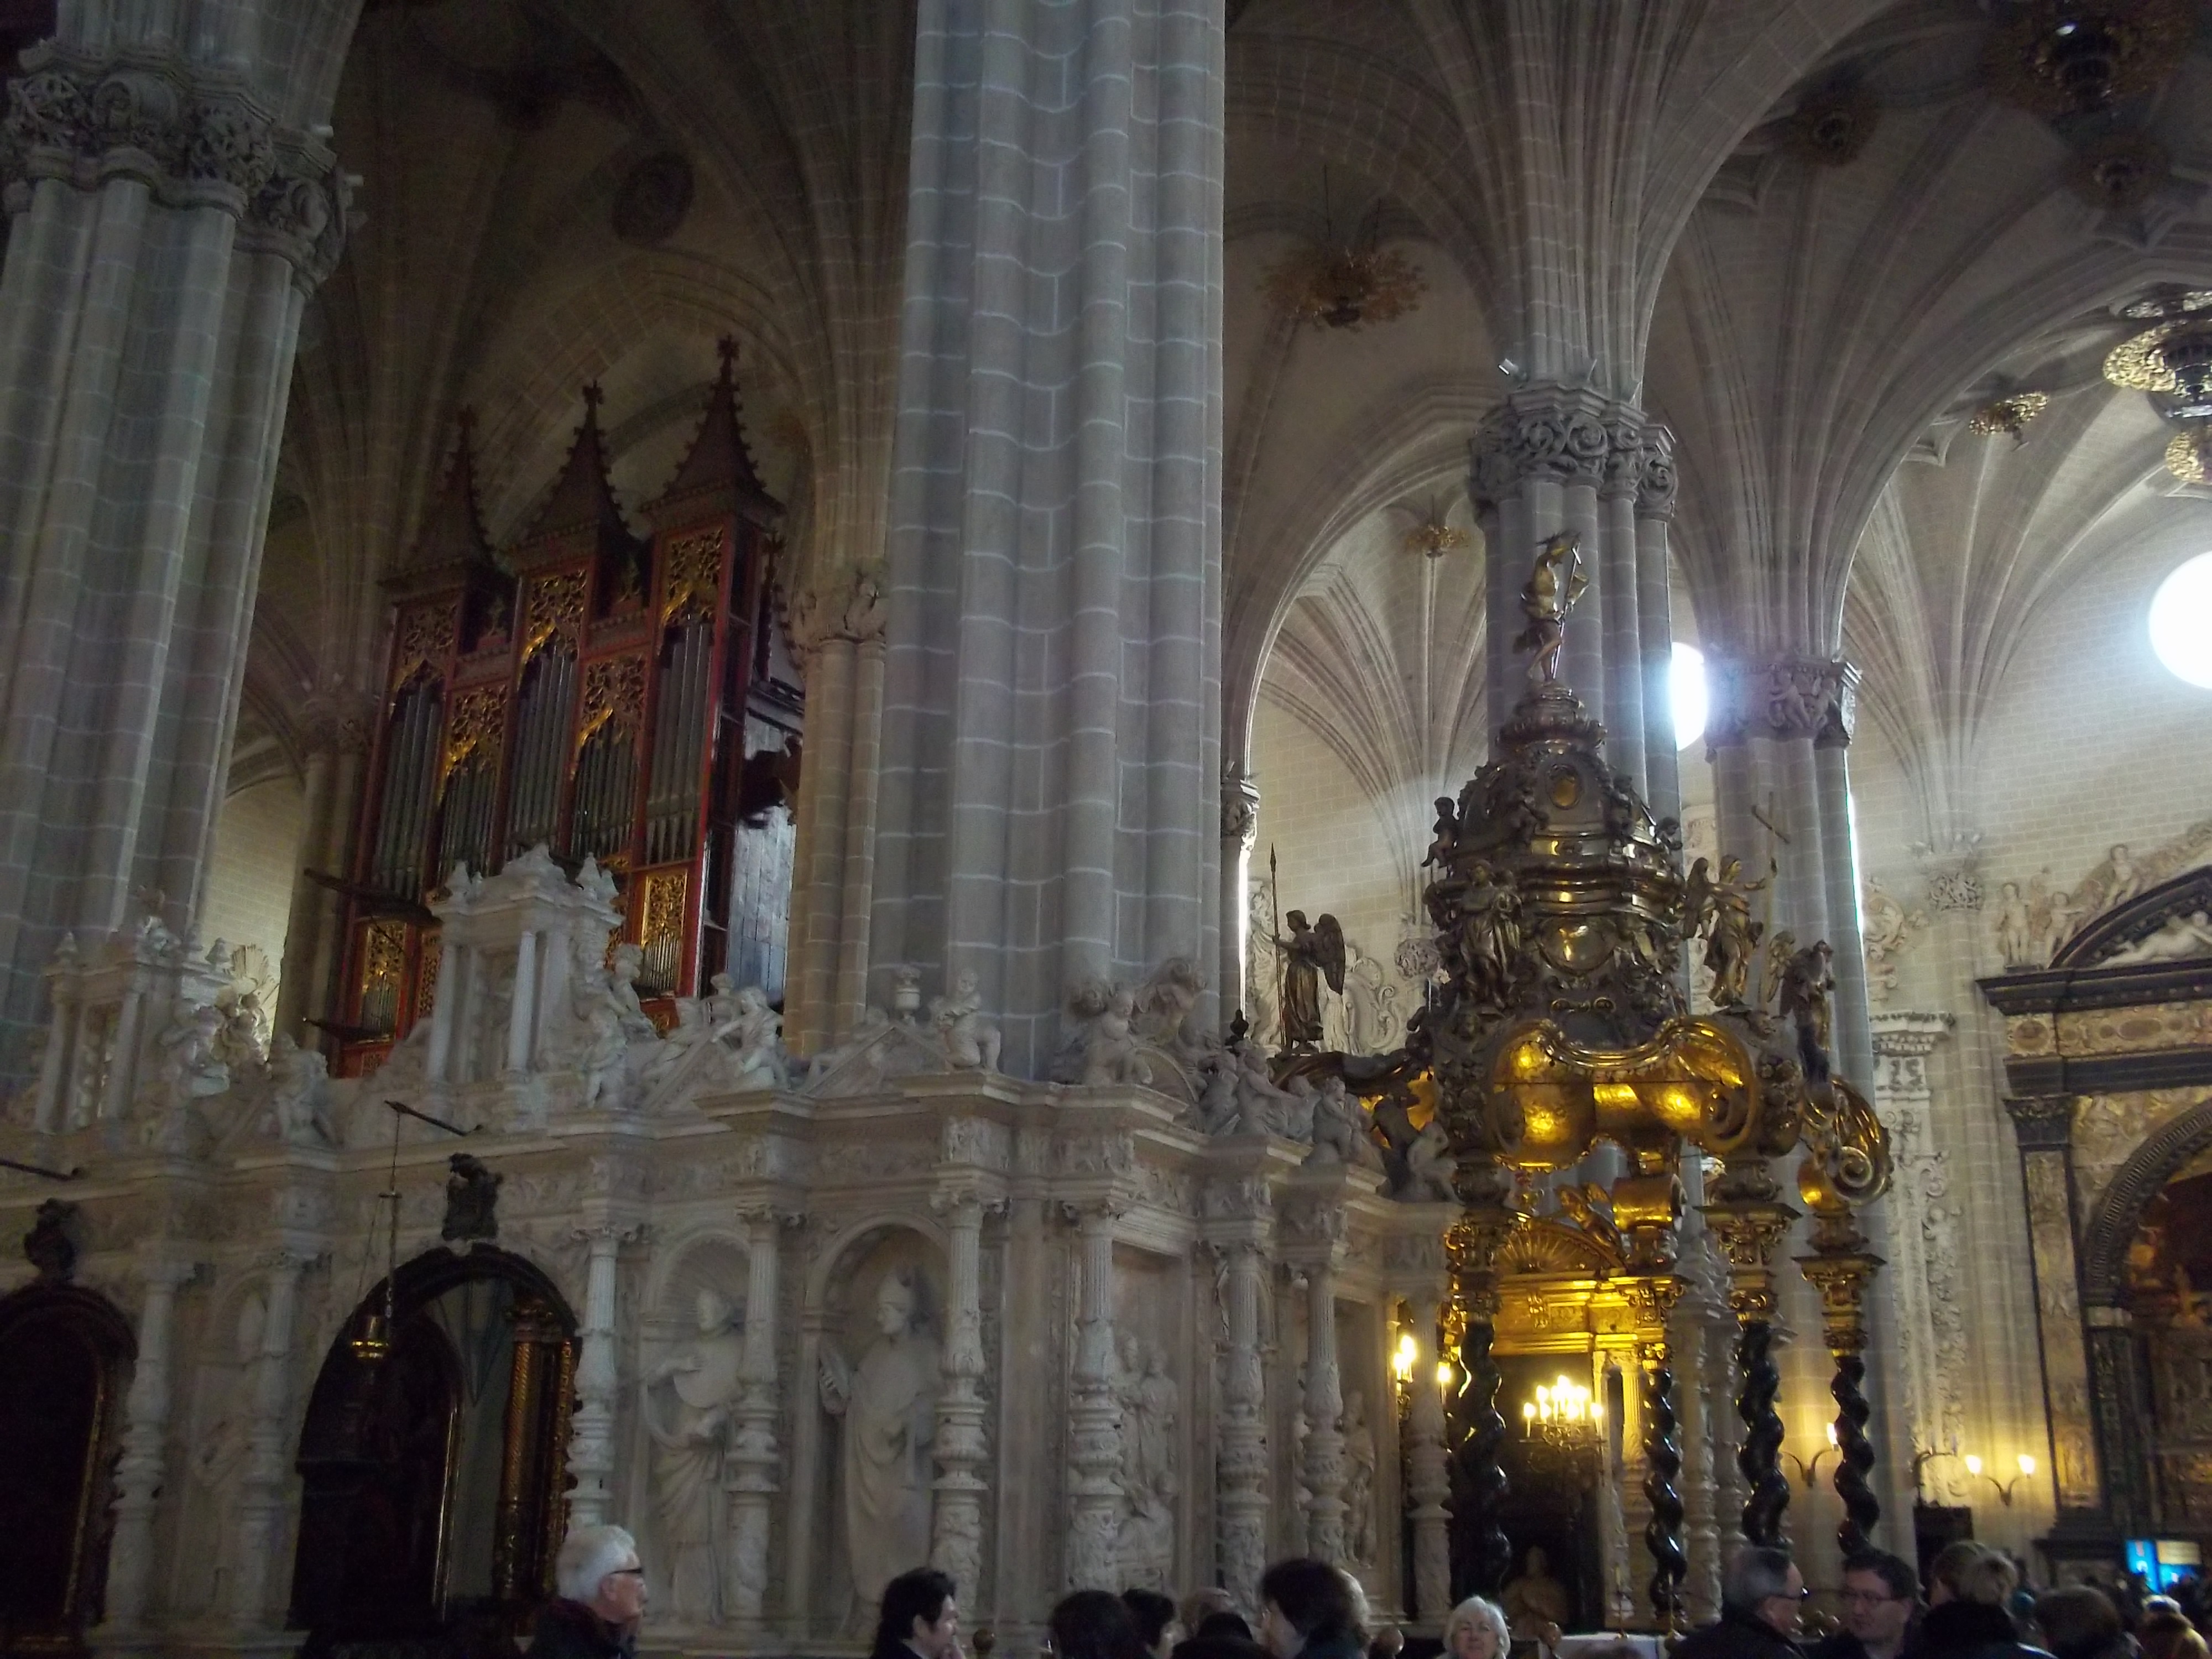 La Catedral Seo, which was breathtaking.